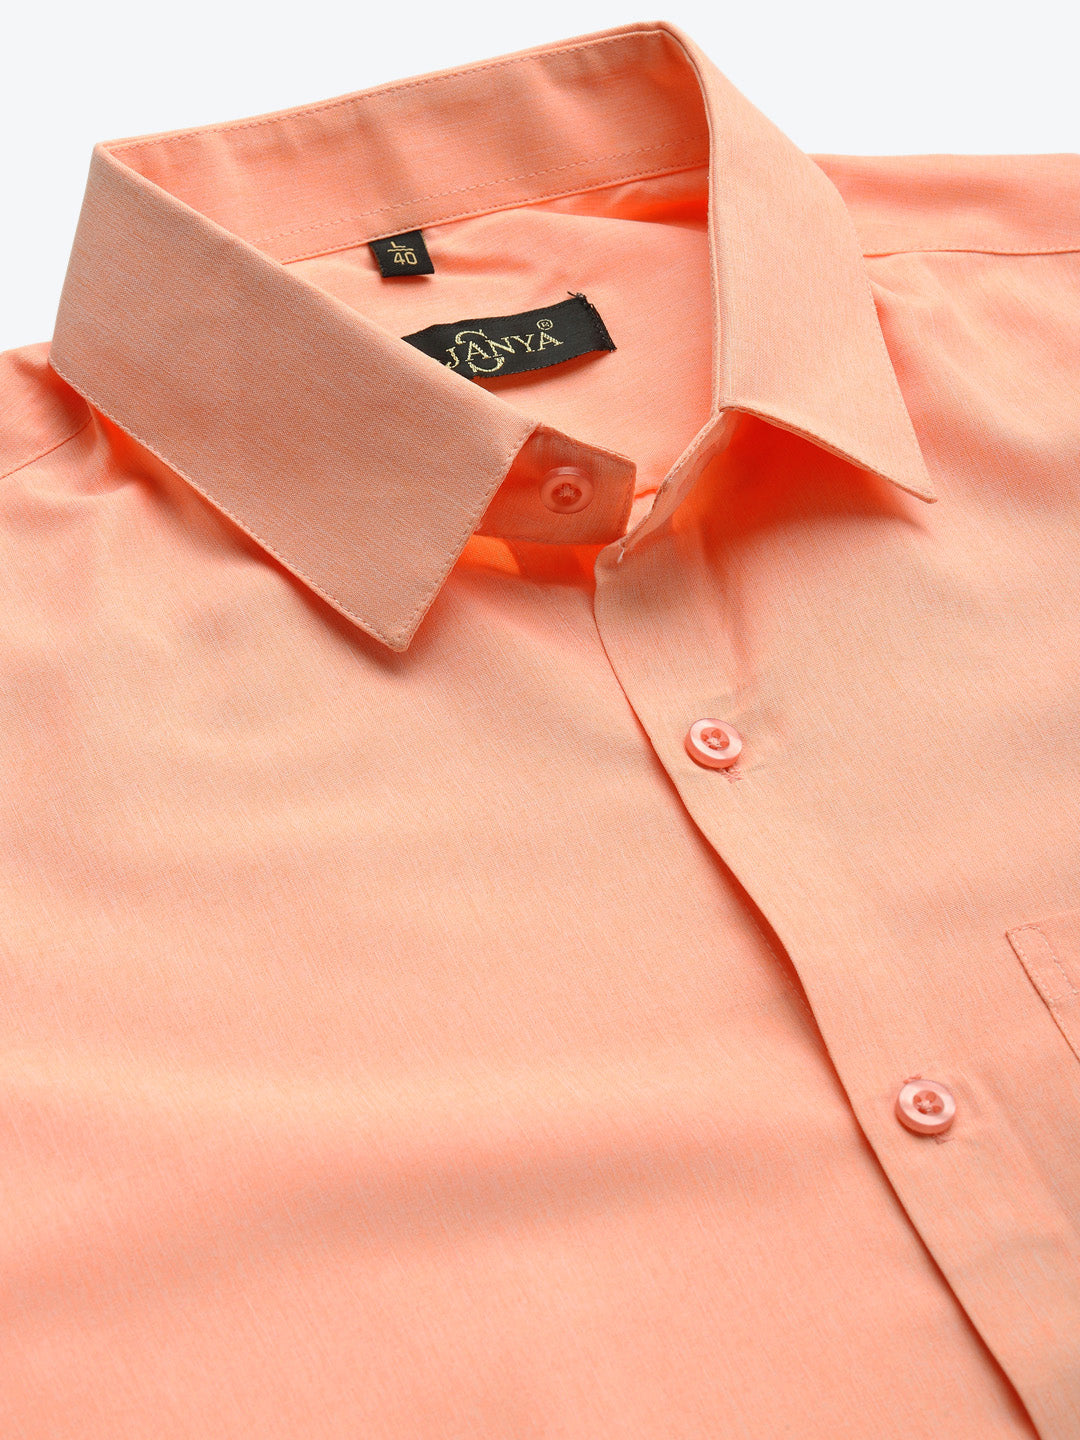 Men's Cotton Peach Casual Shirt